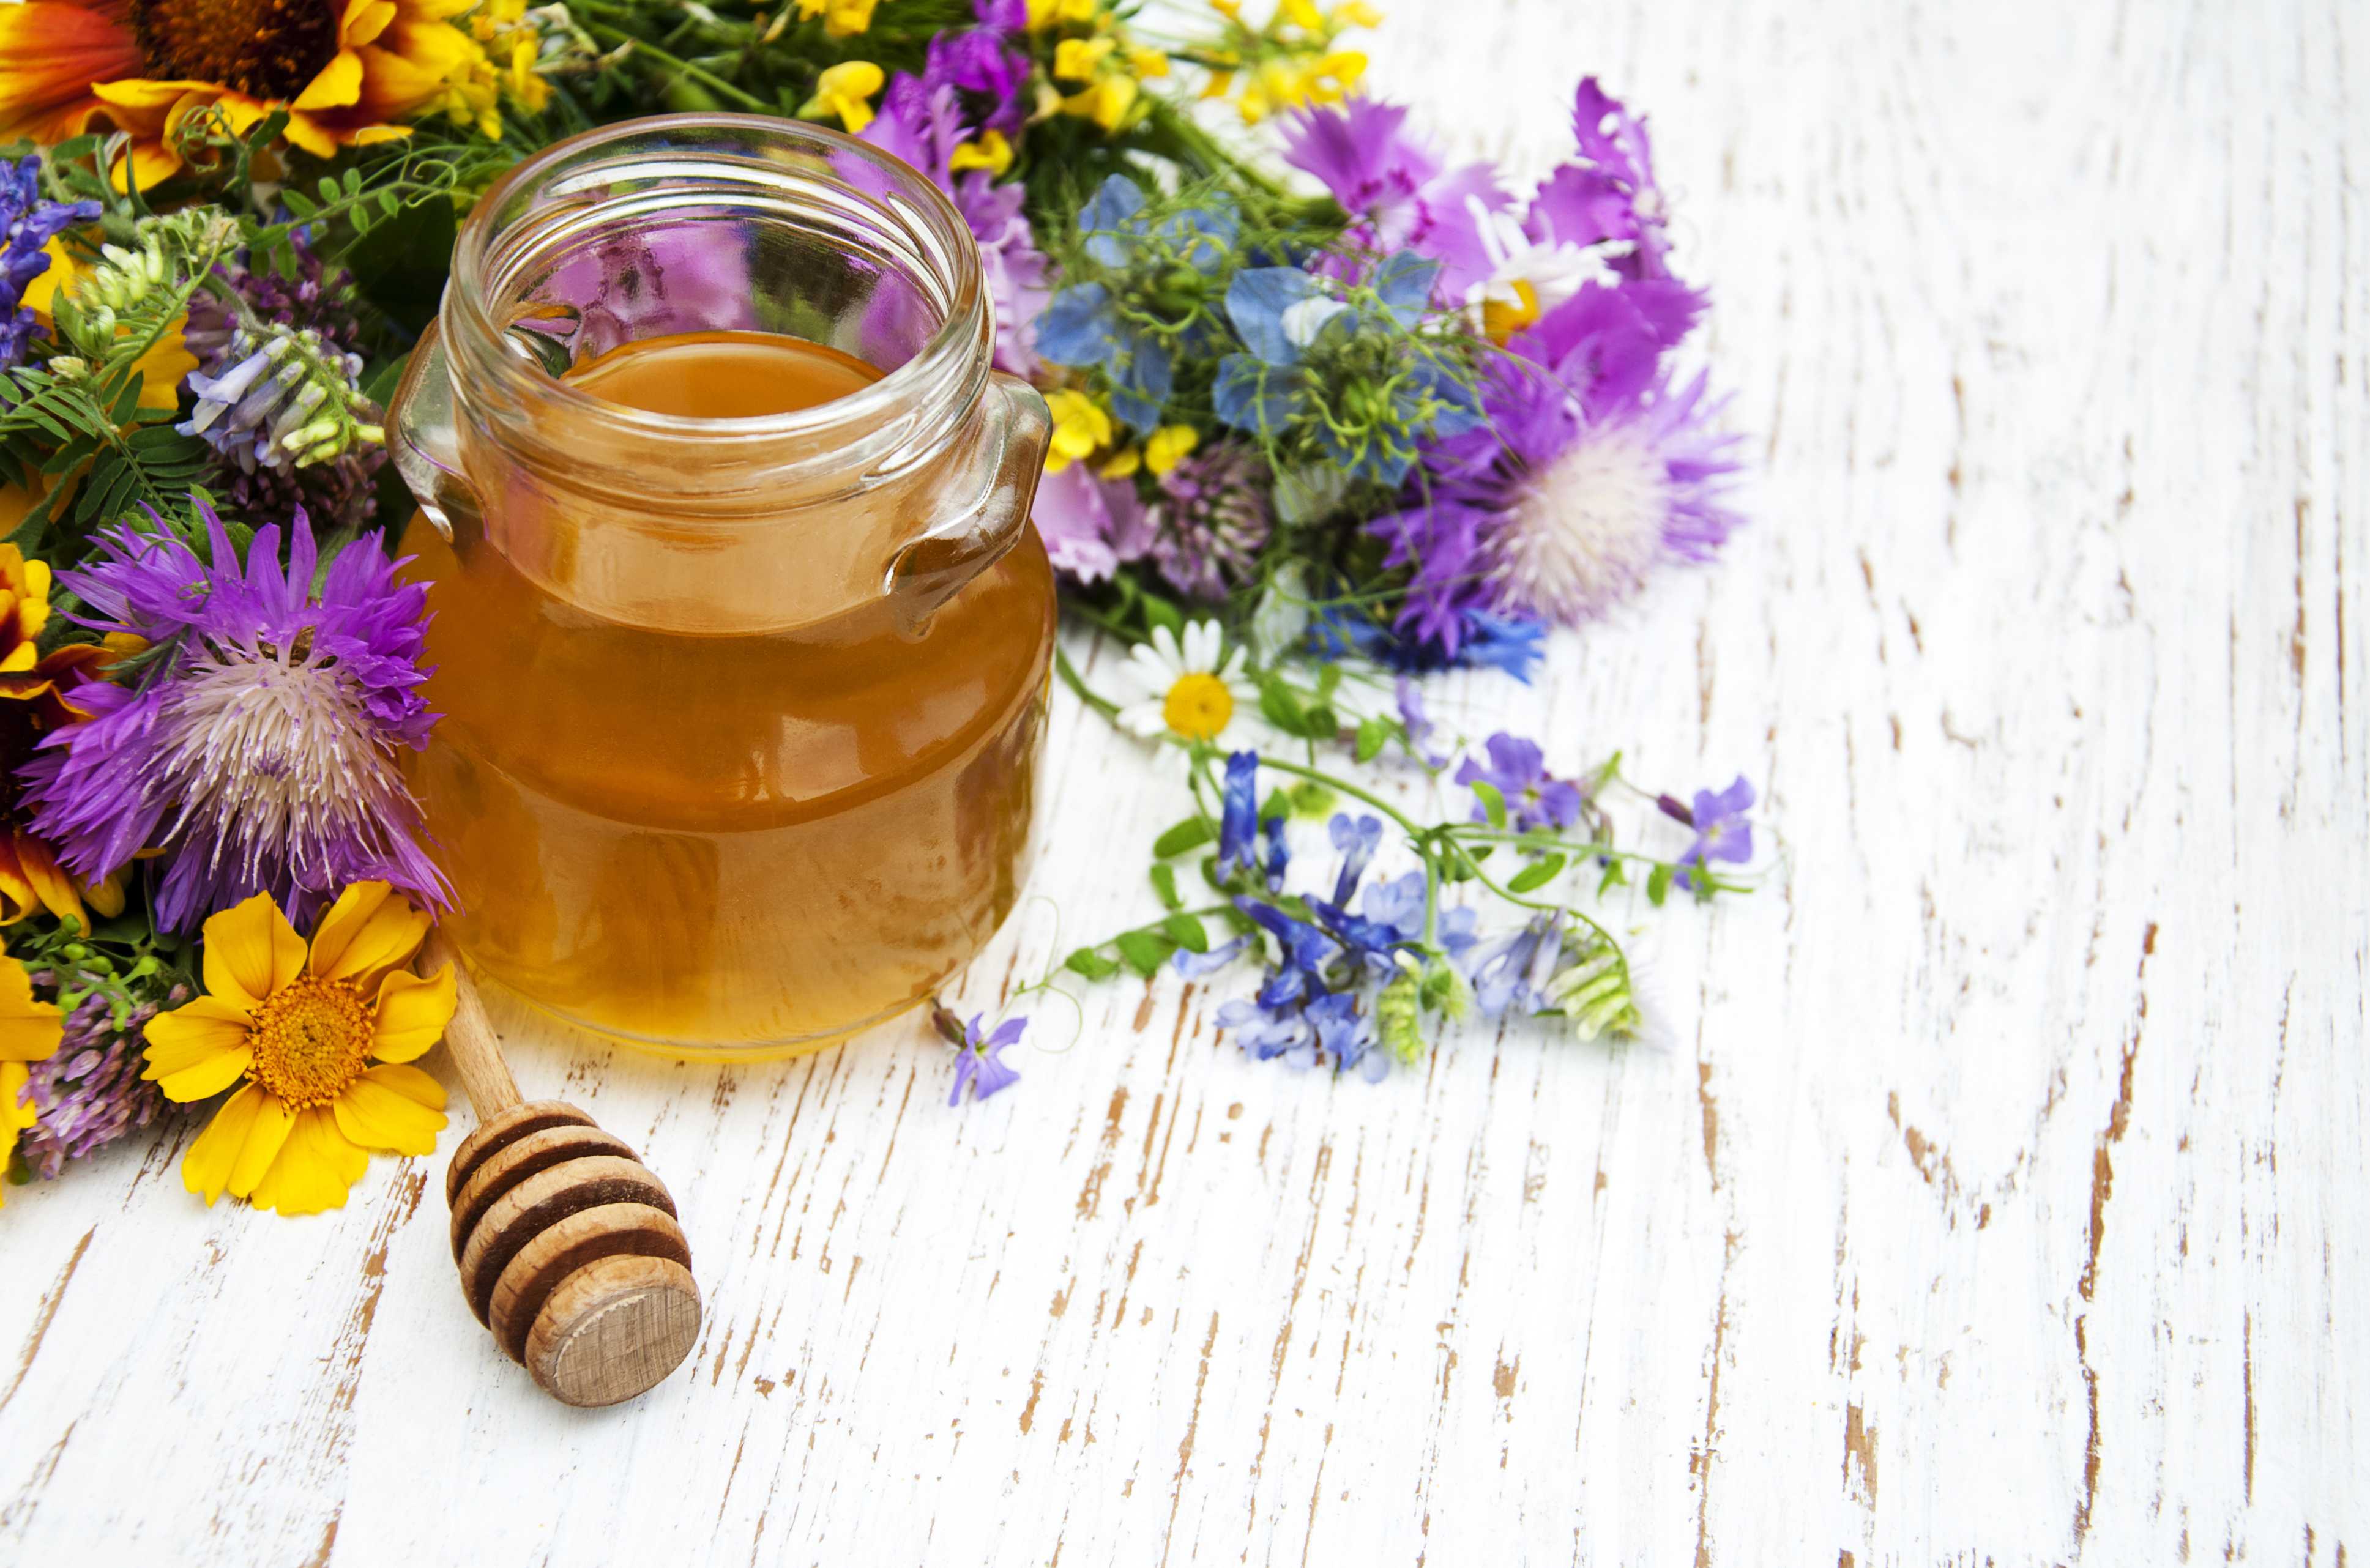 Mieli rari di 3Bee, non solo manuka ma anche tiglio, millefiori, ailanto e melata di miele biologico